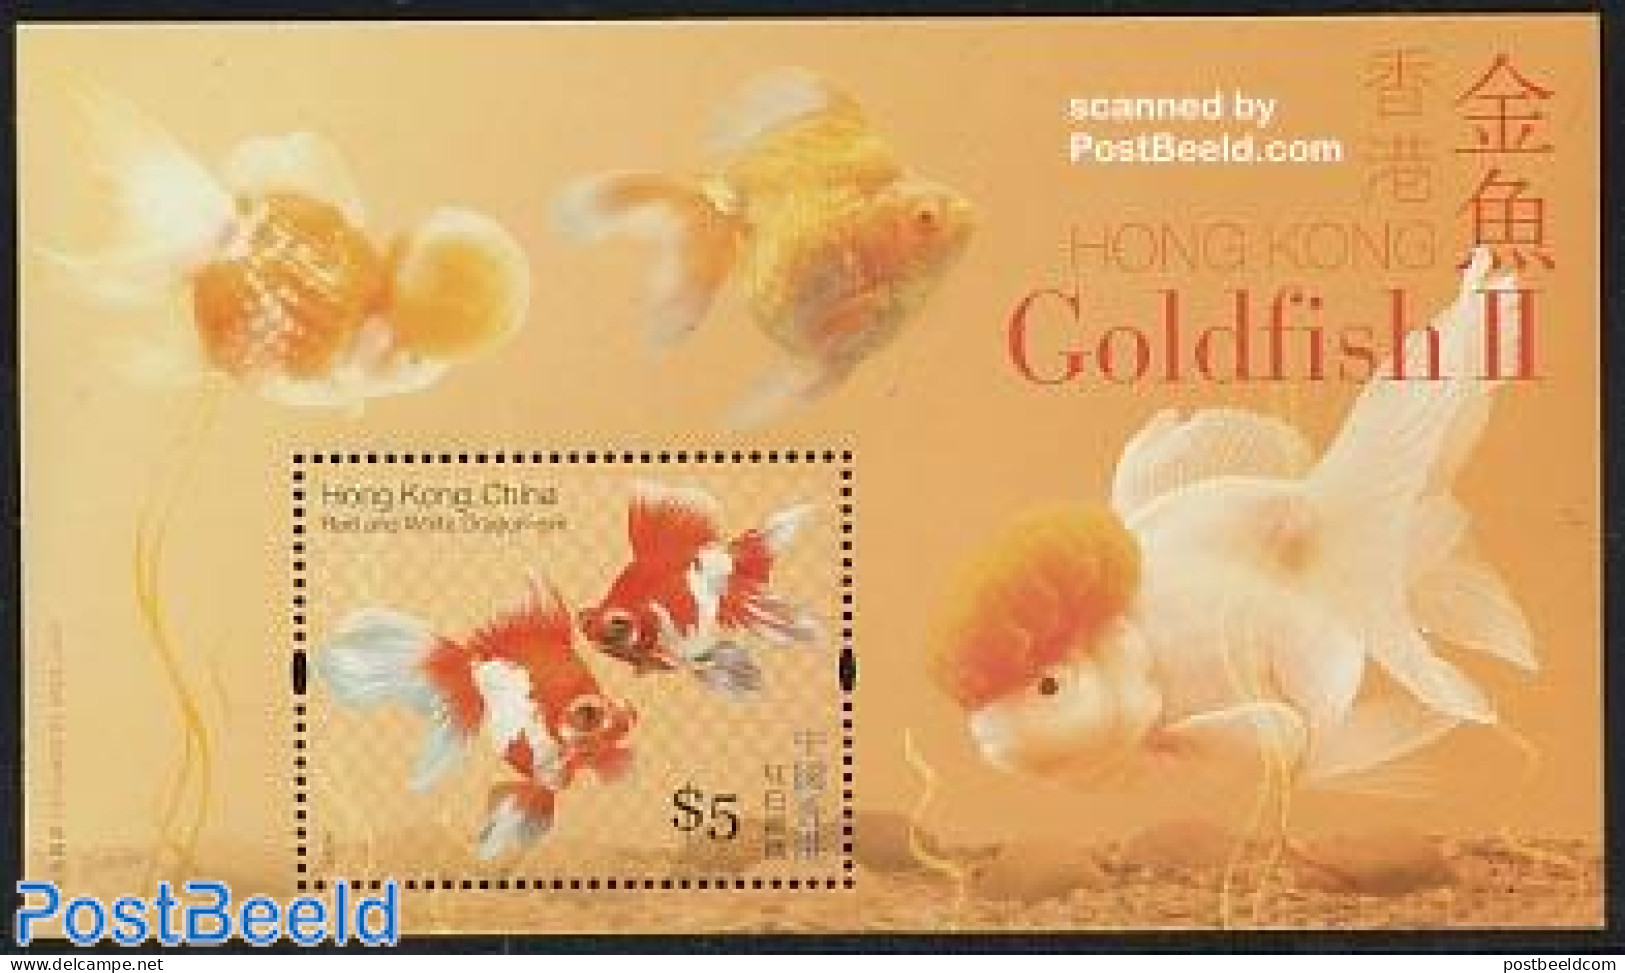 Hong Kong 2005 Goldfish S/s, Mint NH, Nature - Fish - Nuovi